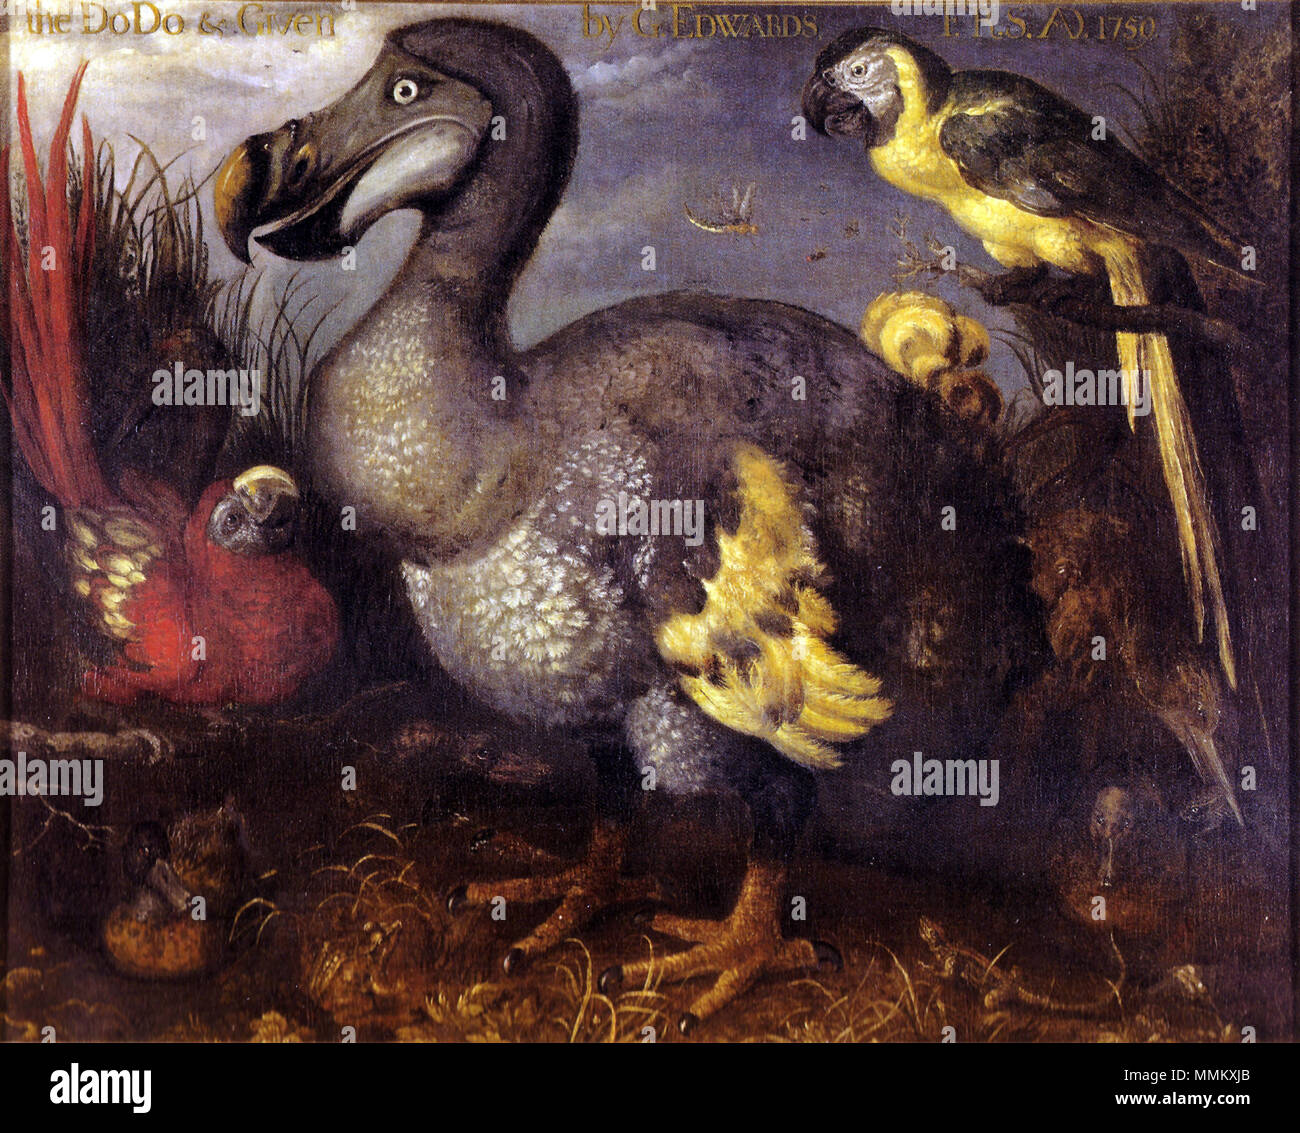 . L'un des plus célèbres et souvent copiés de peintures un Dodo spécimen, comme peint par Roelant Savery à la fin des années 1620. L'image est entré en possession de l'ornithologiste George Edwards, qui a donné plus tard à la British Museum, d'où le nom. L'oiseau d'avaler une grenouille dans le coin inférieur droit peut être l'extinction de même Rail rouge. Il a également été suggéré que les deux perroquets sont le moindre Antillean Macaw (à gauche) et la Martinique (droite). . Fin des années 1620. Roelant Savery (1576-1639) Noms alternatifs Roelant Savery, Saverij, Roeland Roeland Maertensz. Savery, Roelandt Savery, Banque D'Images